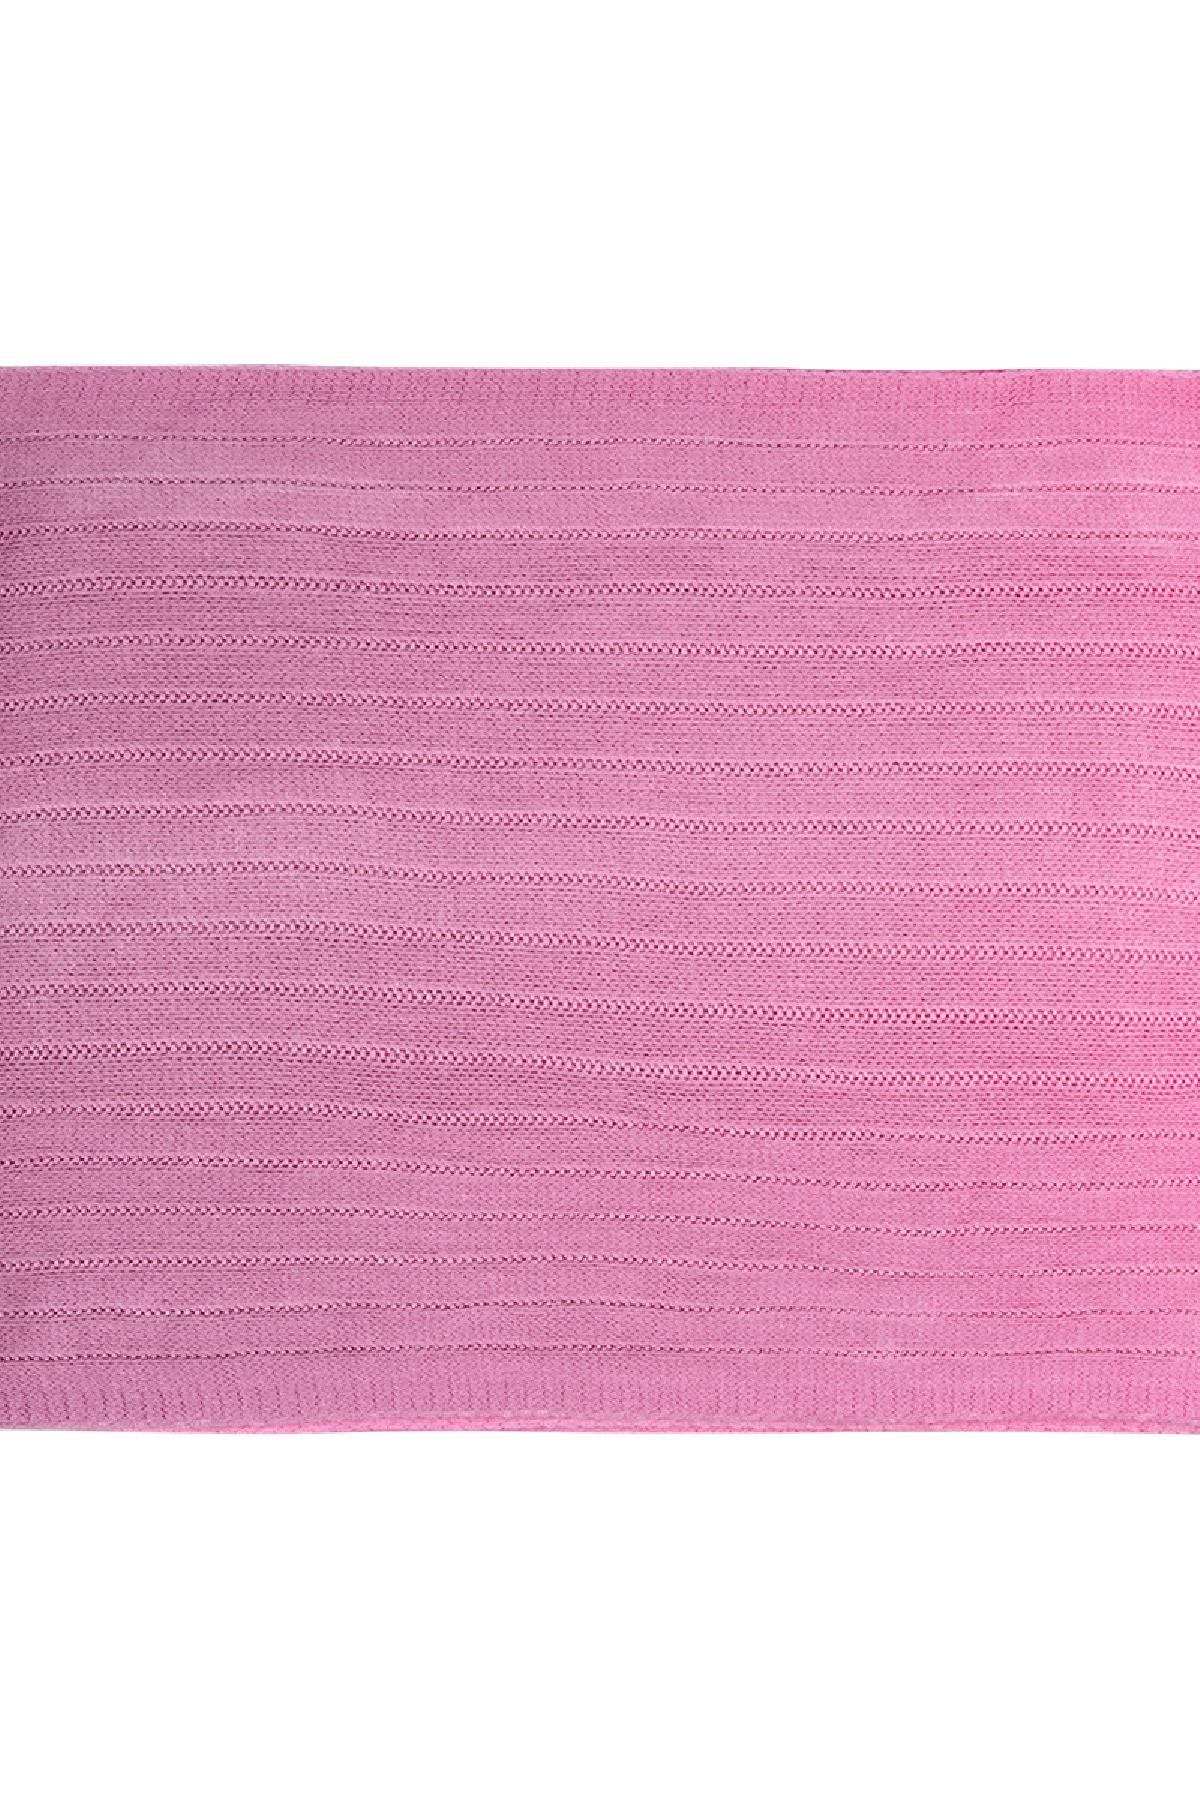 Kravat boya eşarp Pink Acrylic Resim3